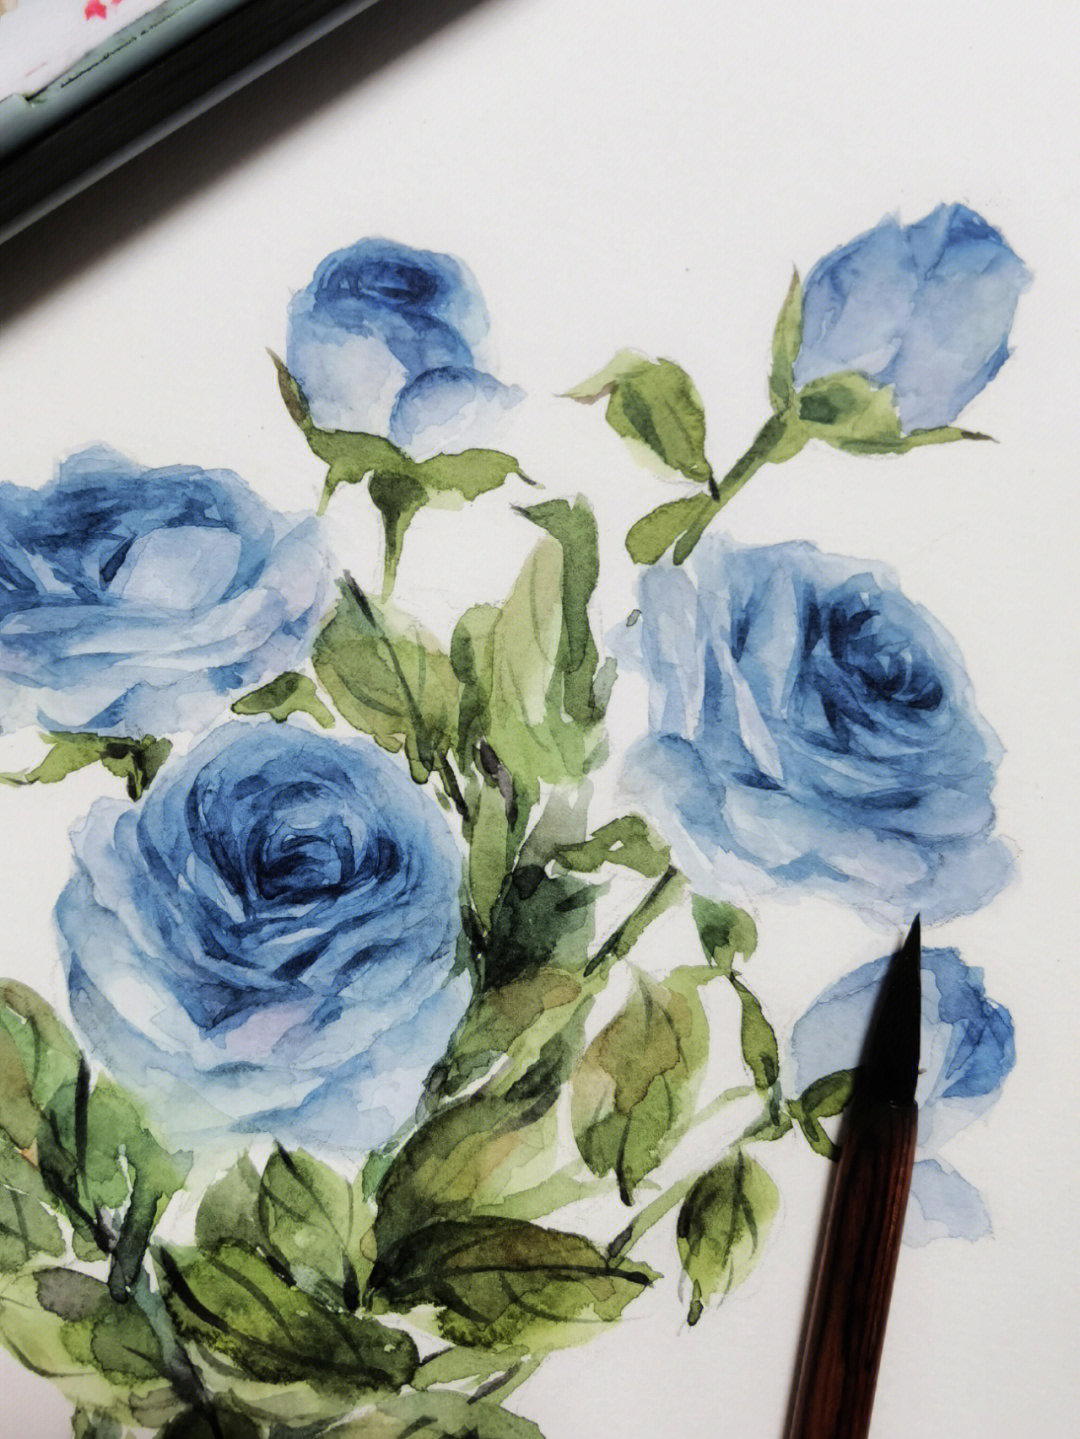 蓝玫瑰画法图片